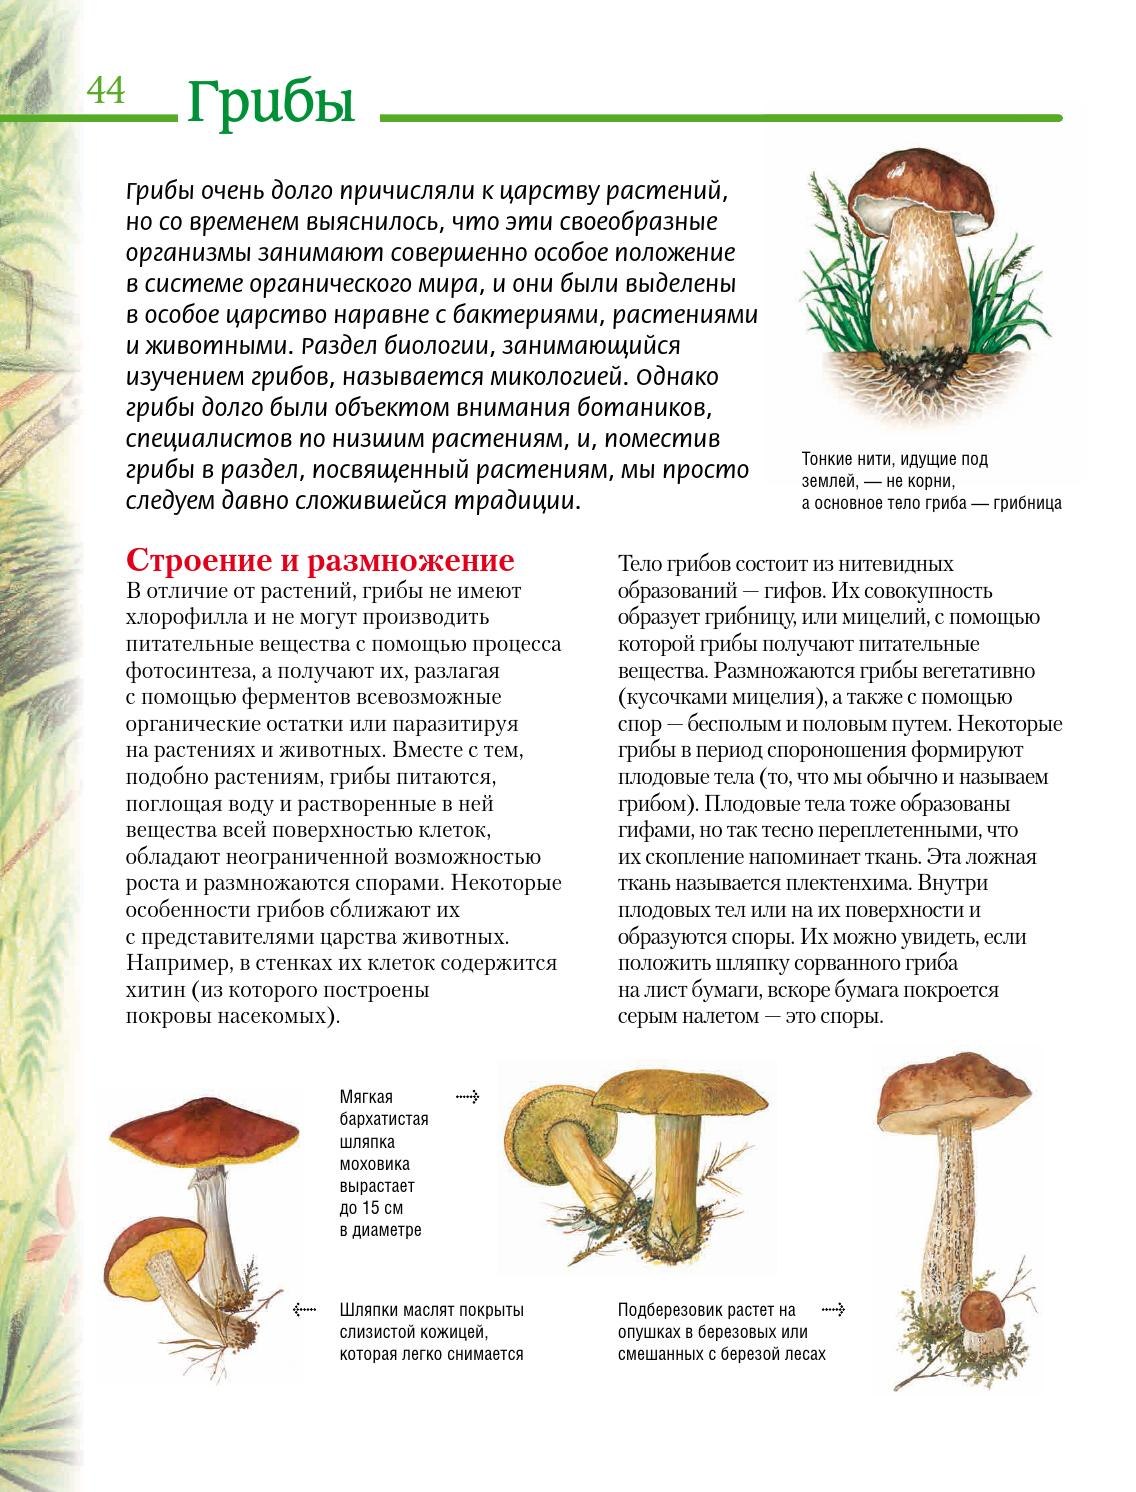 У грибов есть размножение. Шляпочные грибы подберезовик описание. Царство грибов строение грибницы. Плодовые тела грибов образованы. Из чего состоит тело гриба.